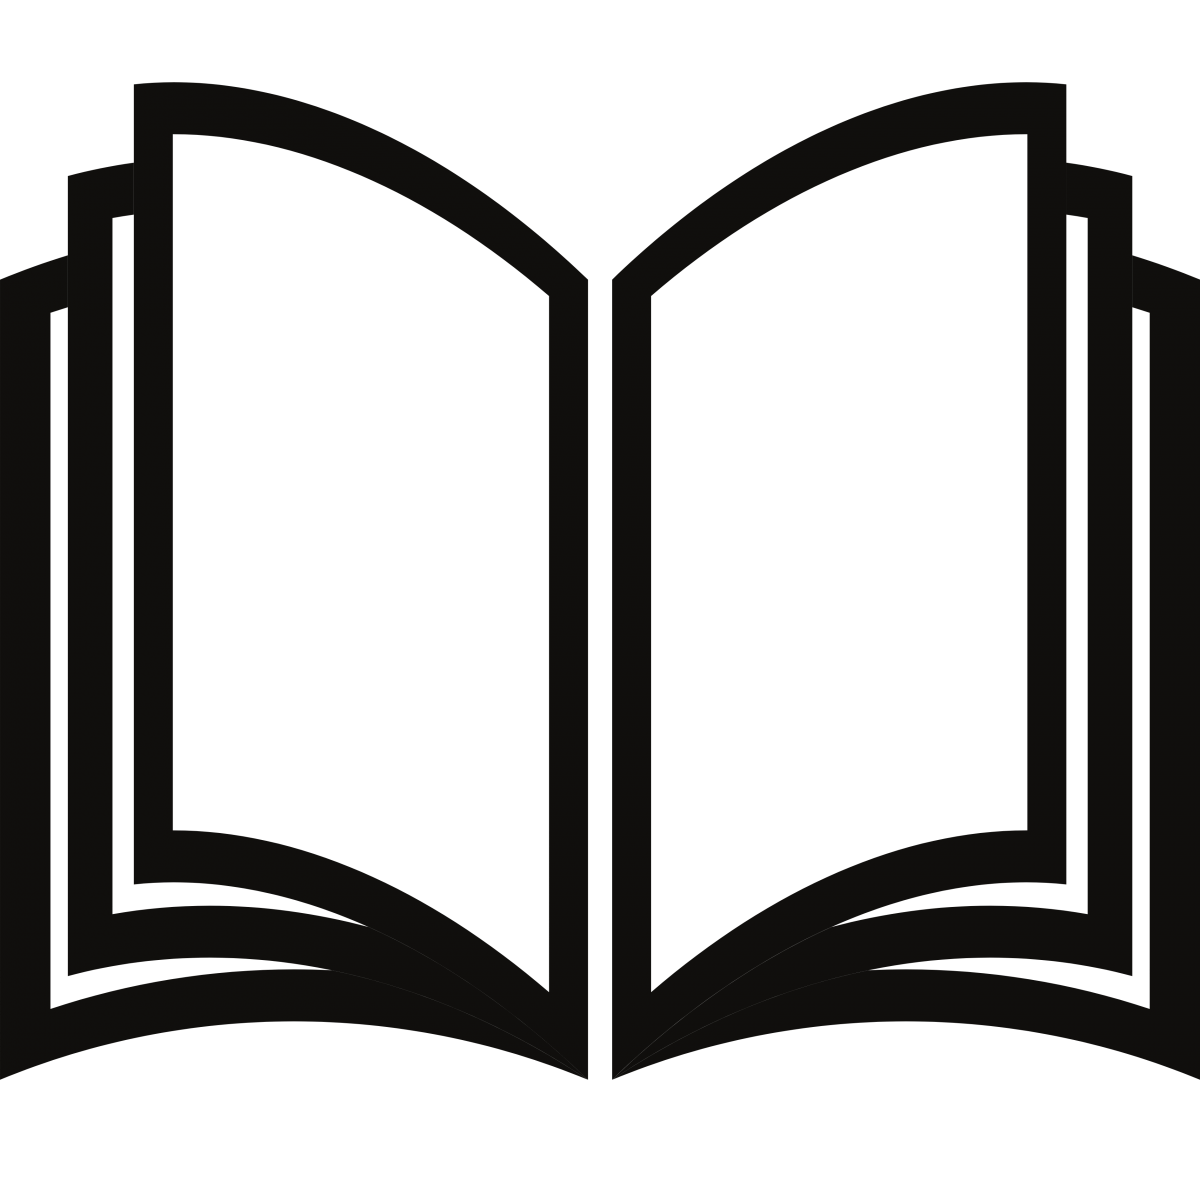 A black open book icon.